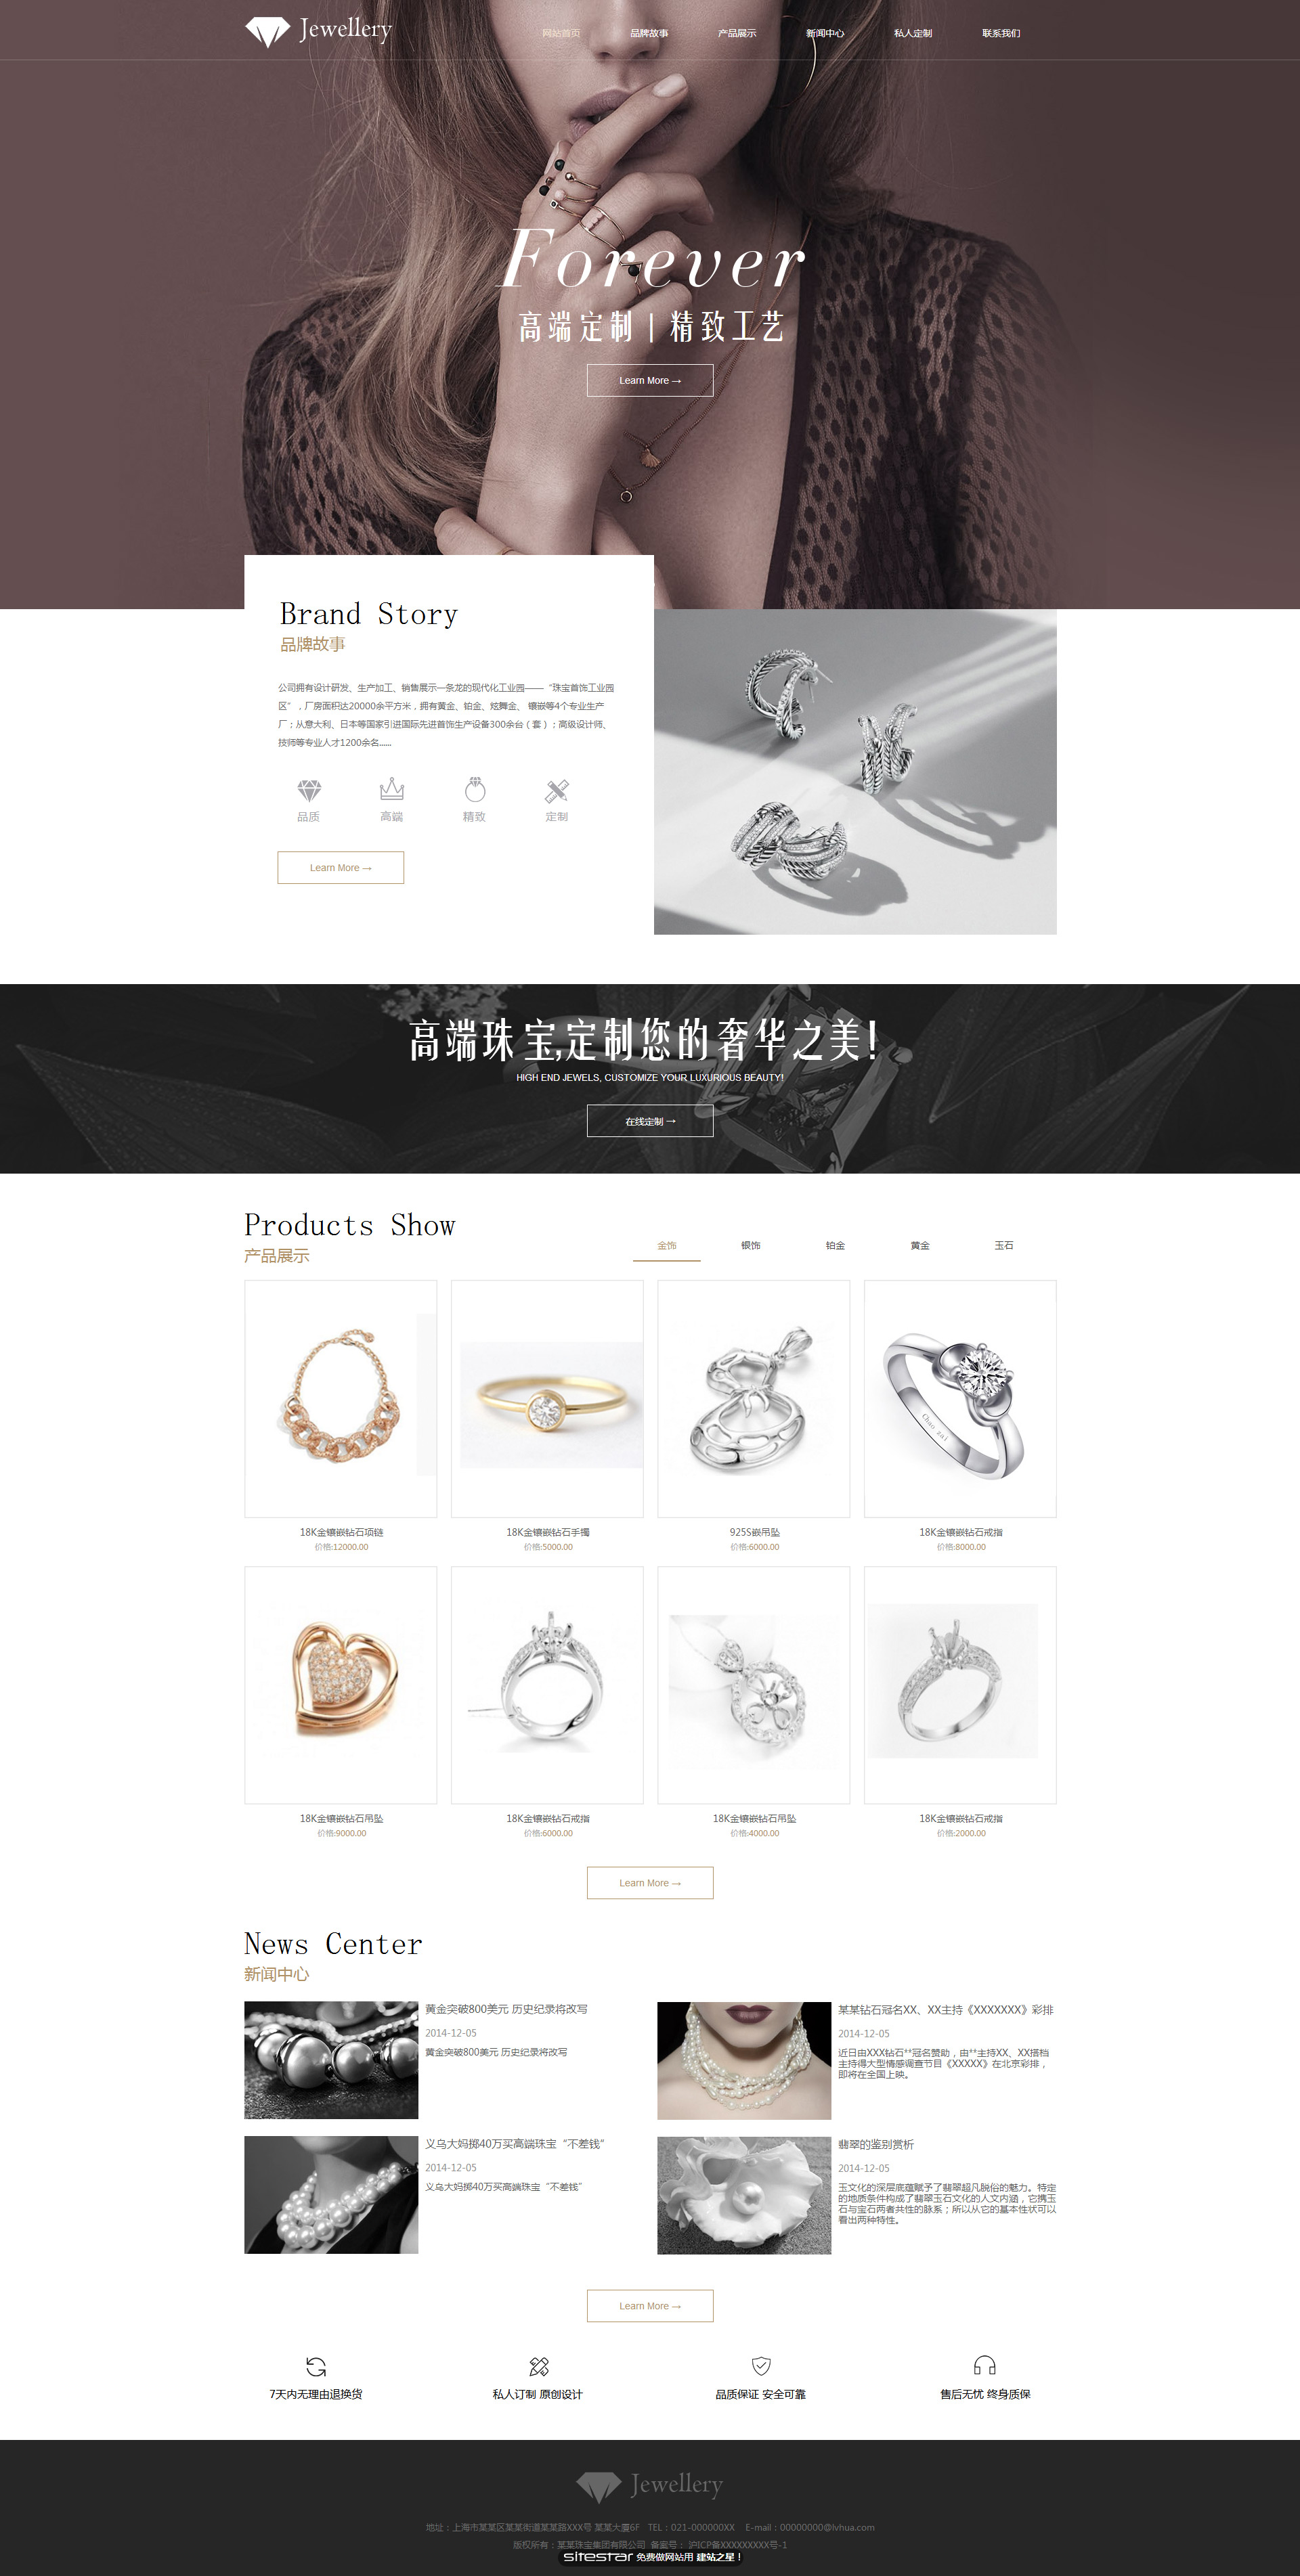 企业网站精美模板-jewelry-1073448